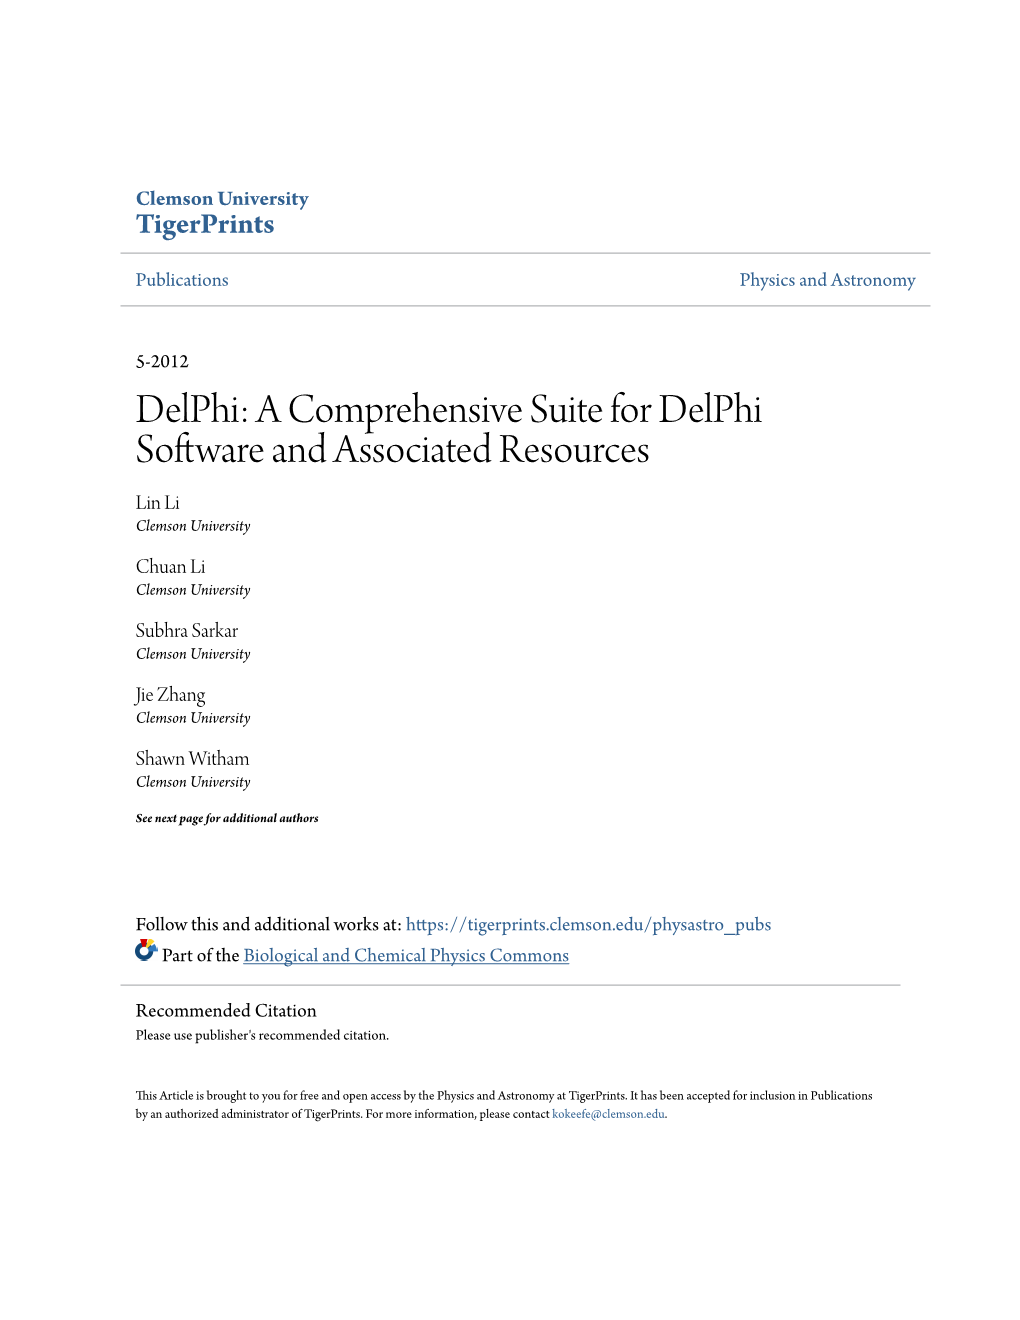 Delphi: a Comprehensive Suite for Delphi Software and Associated Resources Lin Li Clemson University